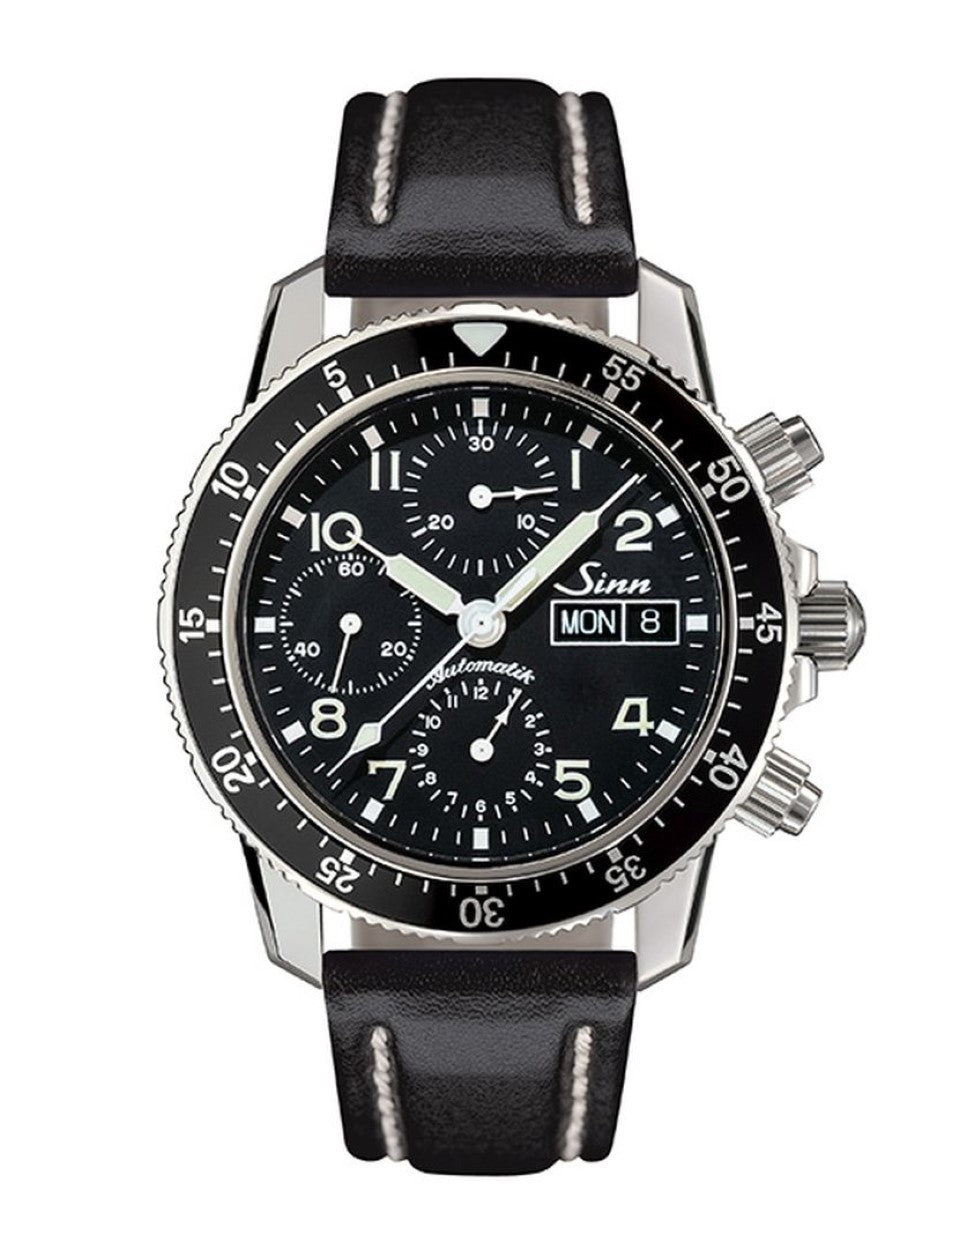 Sinn (ซินน์) นาฬิกา Pilot โครโนกราฟ รุ่น 103 St Sa สายหนังสีดำ ขนาดตัวเรือน 41 มม. (103 St Sa)